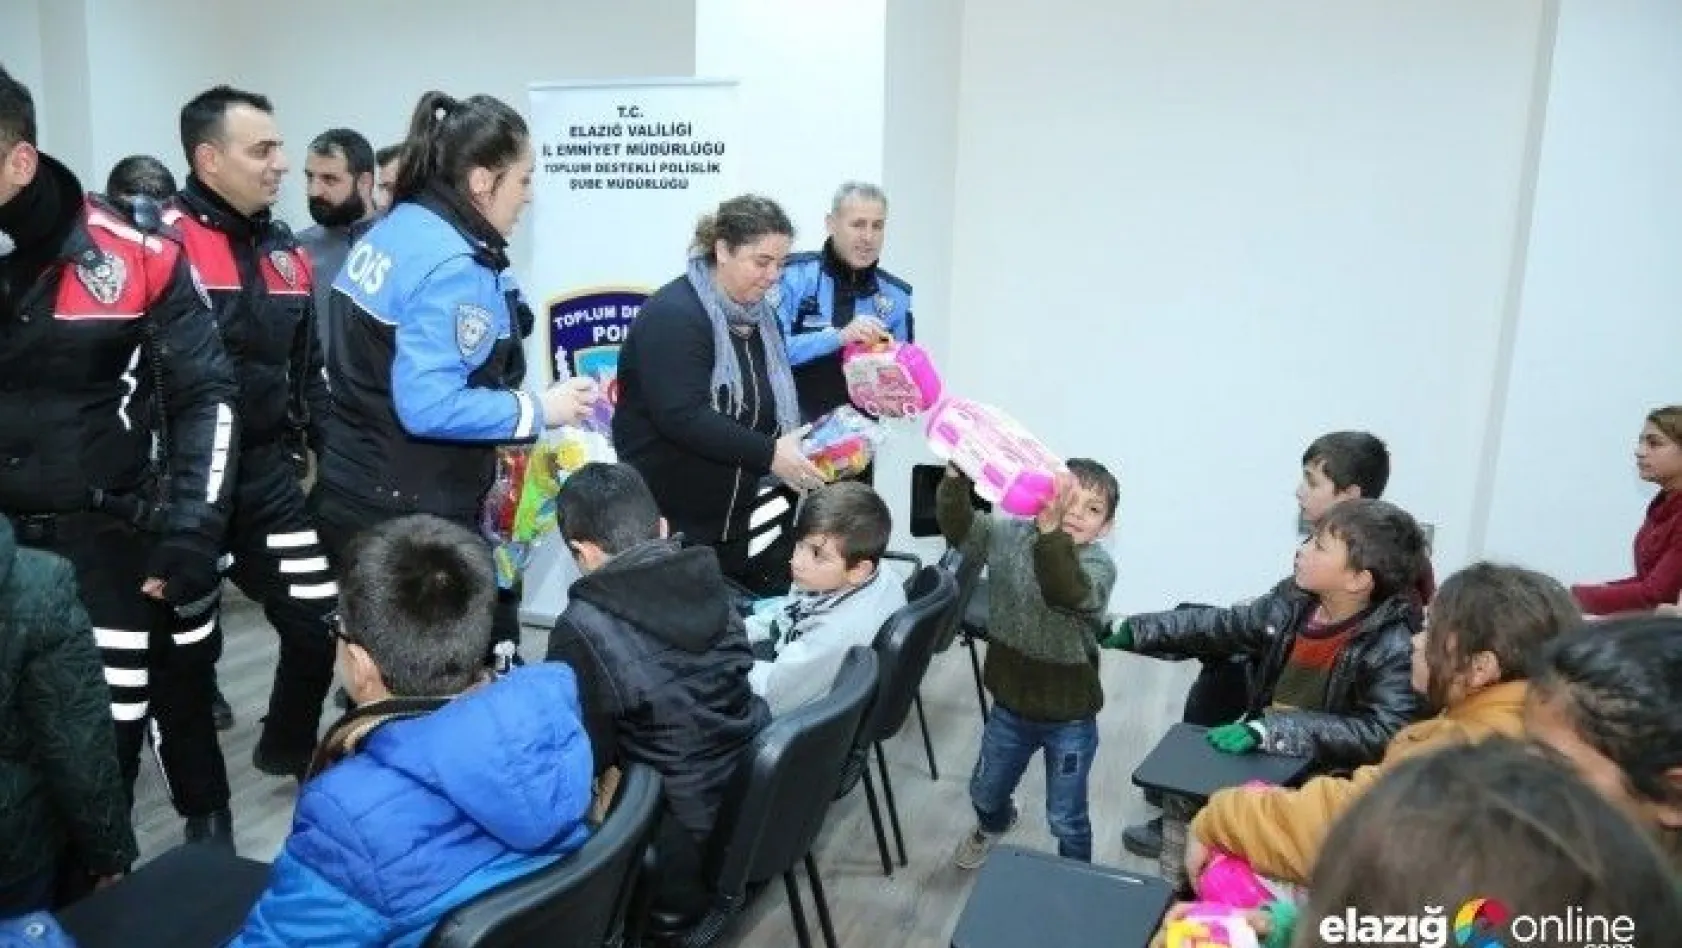 Elazığ polisi, düzenlendiği etkinlikte depremzede çocukları ağırladı